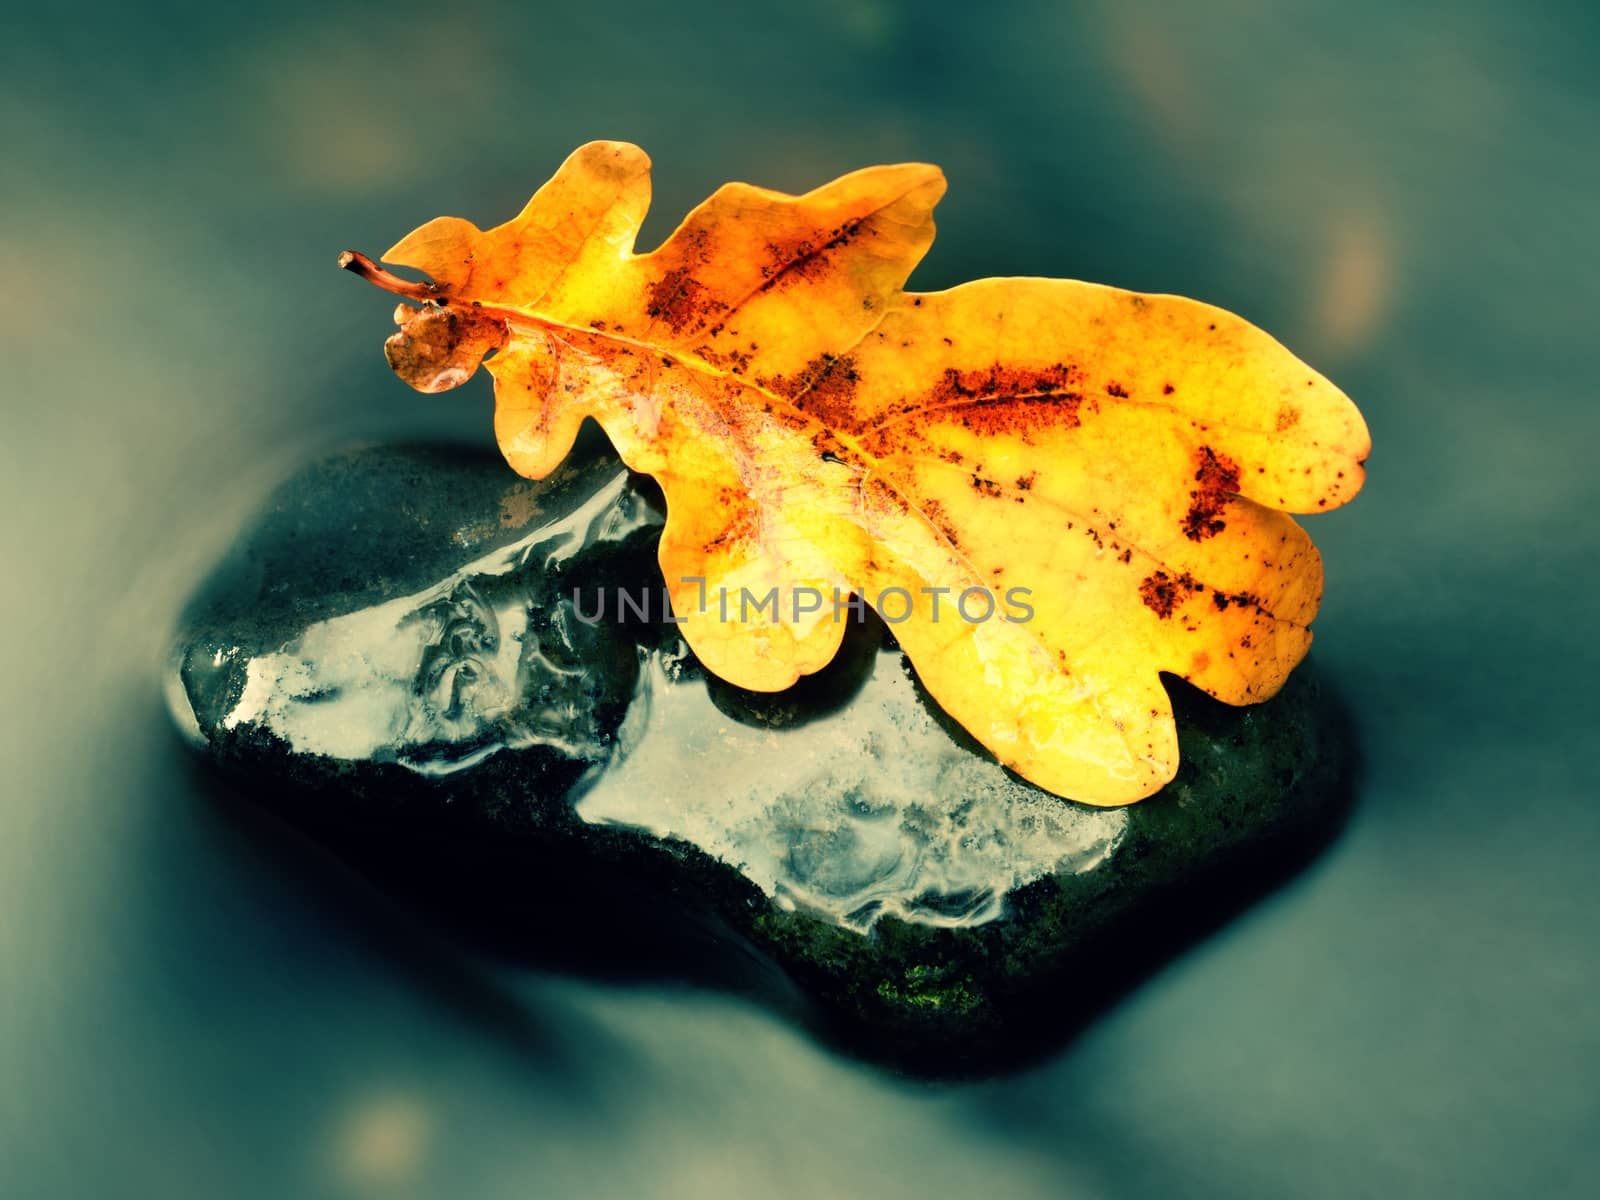 Detail of rotten old oak leaf on basalt stone in blurred water by rdonar2